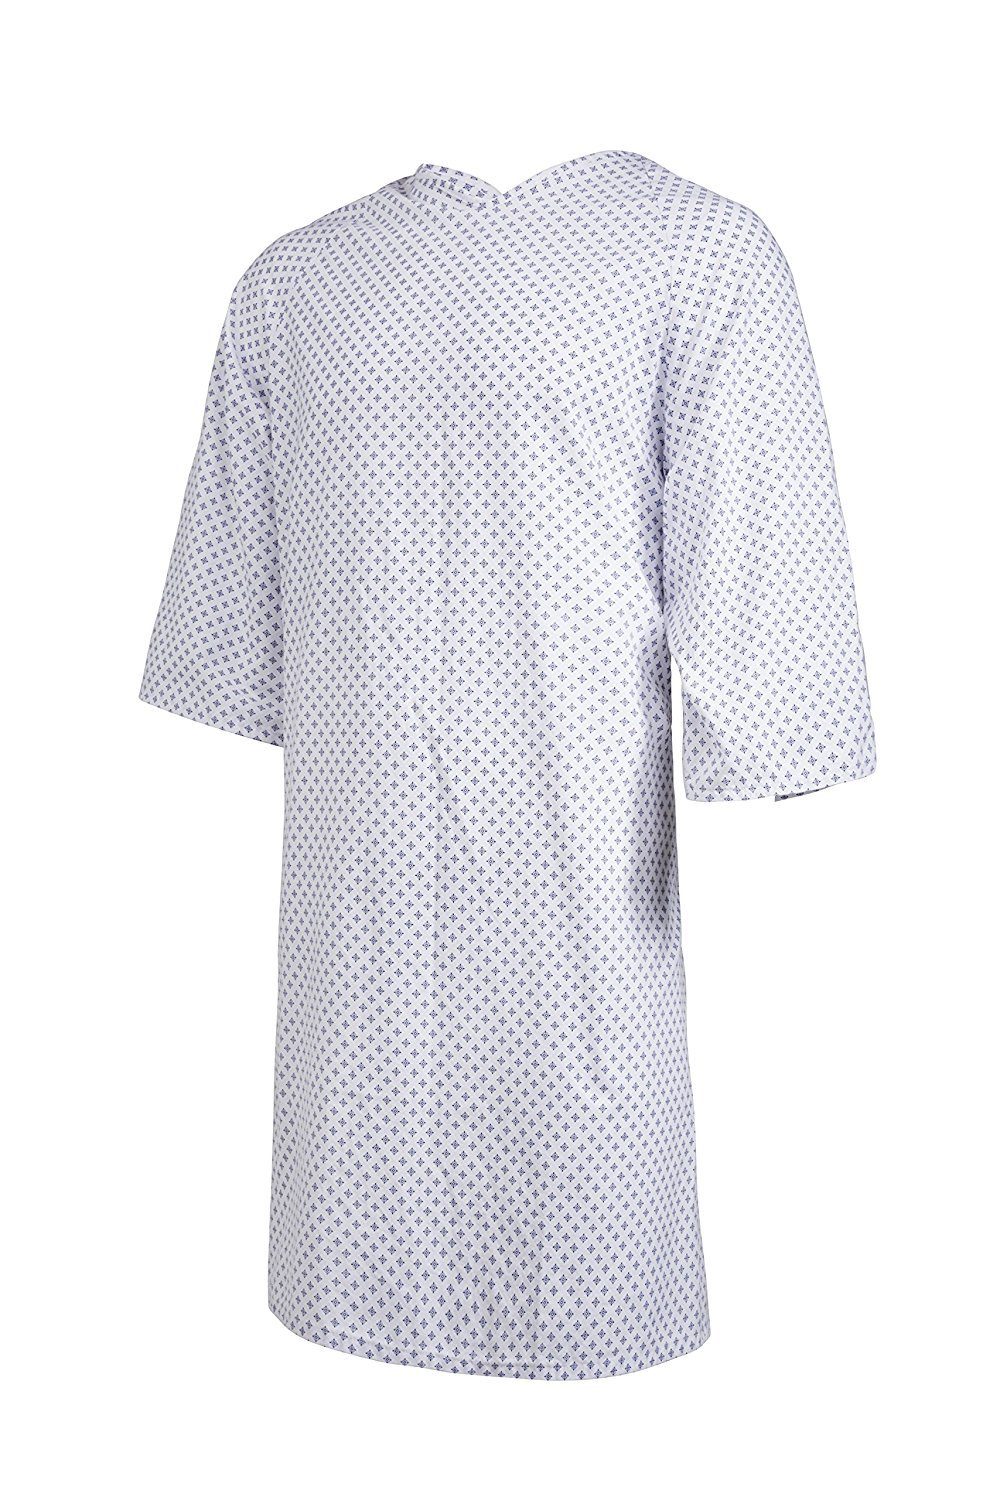 Clinotest Nachthemd »Patientenhemd/Nachthemd/Krankenhaushemd/Pflegehemd,  Einheitsgröße, in der Farbe Sternchen Blau« online kaufen | OTTO